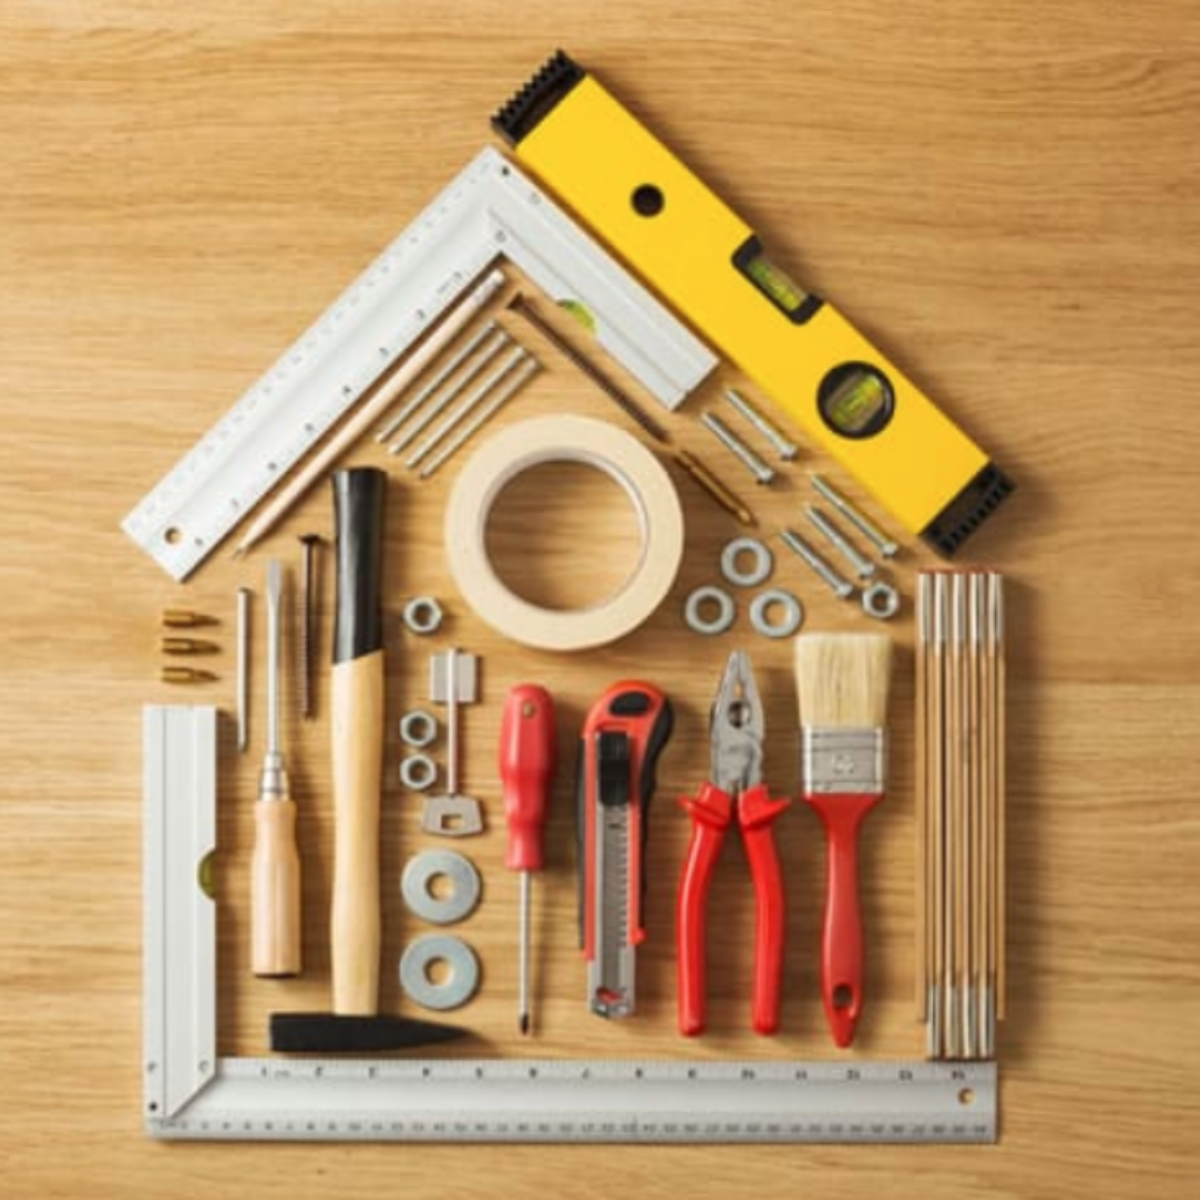 38. Upgrade His Toolbox: DIY Home Improvement Tools